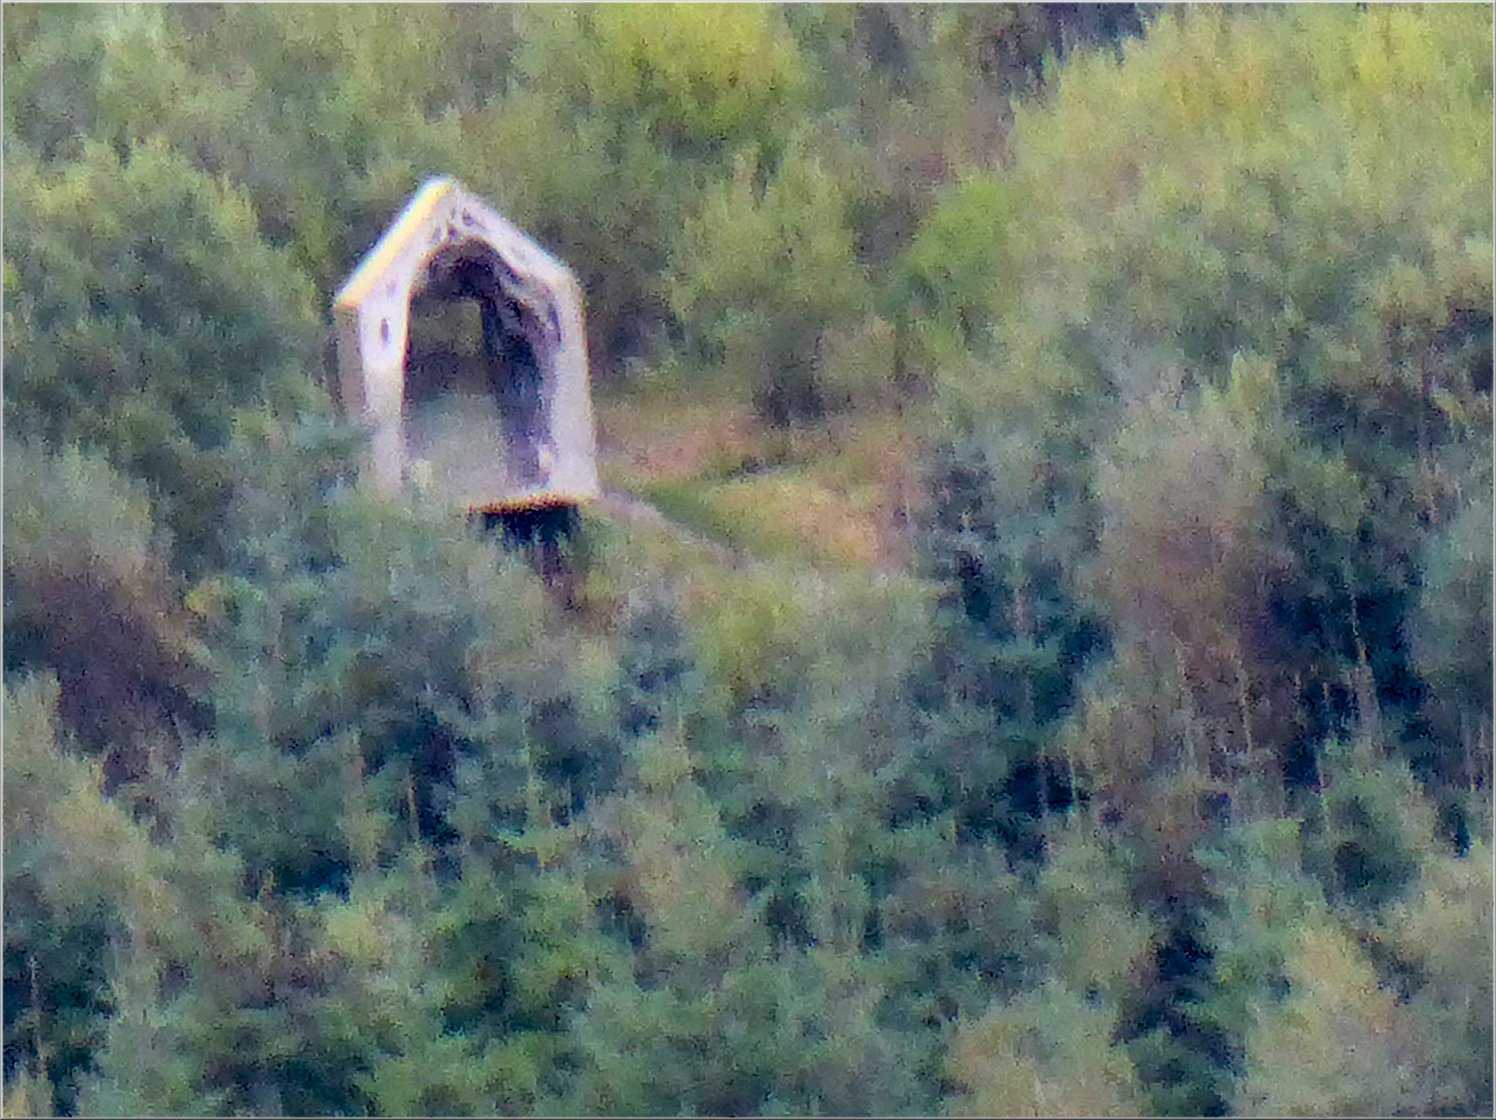 Freya's Cabin seen across the lake from Robin's Hut